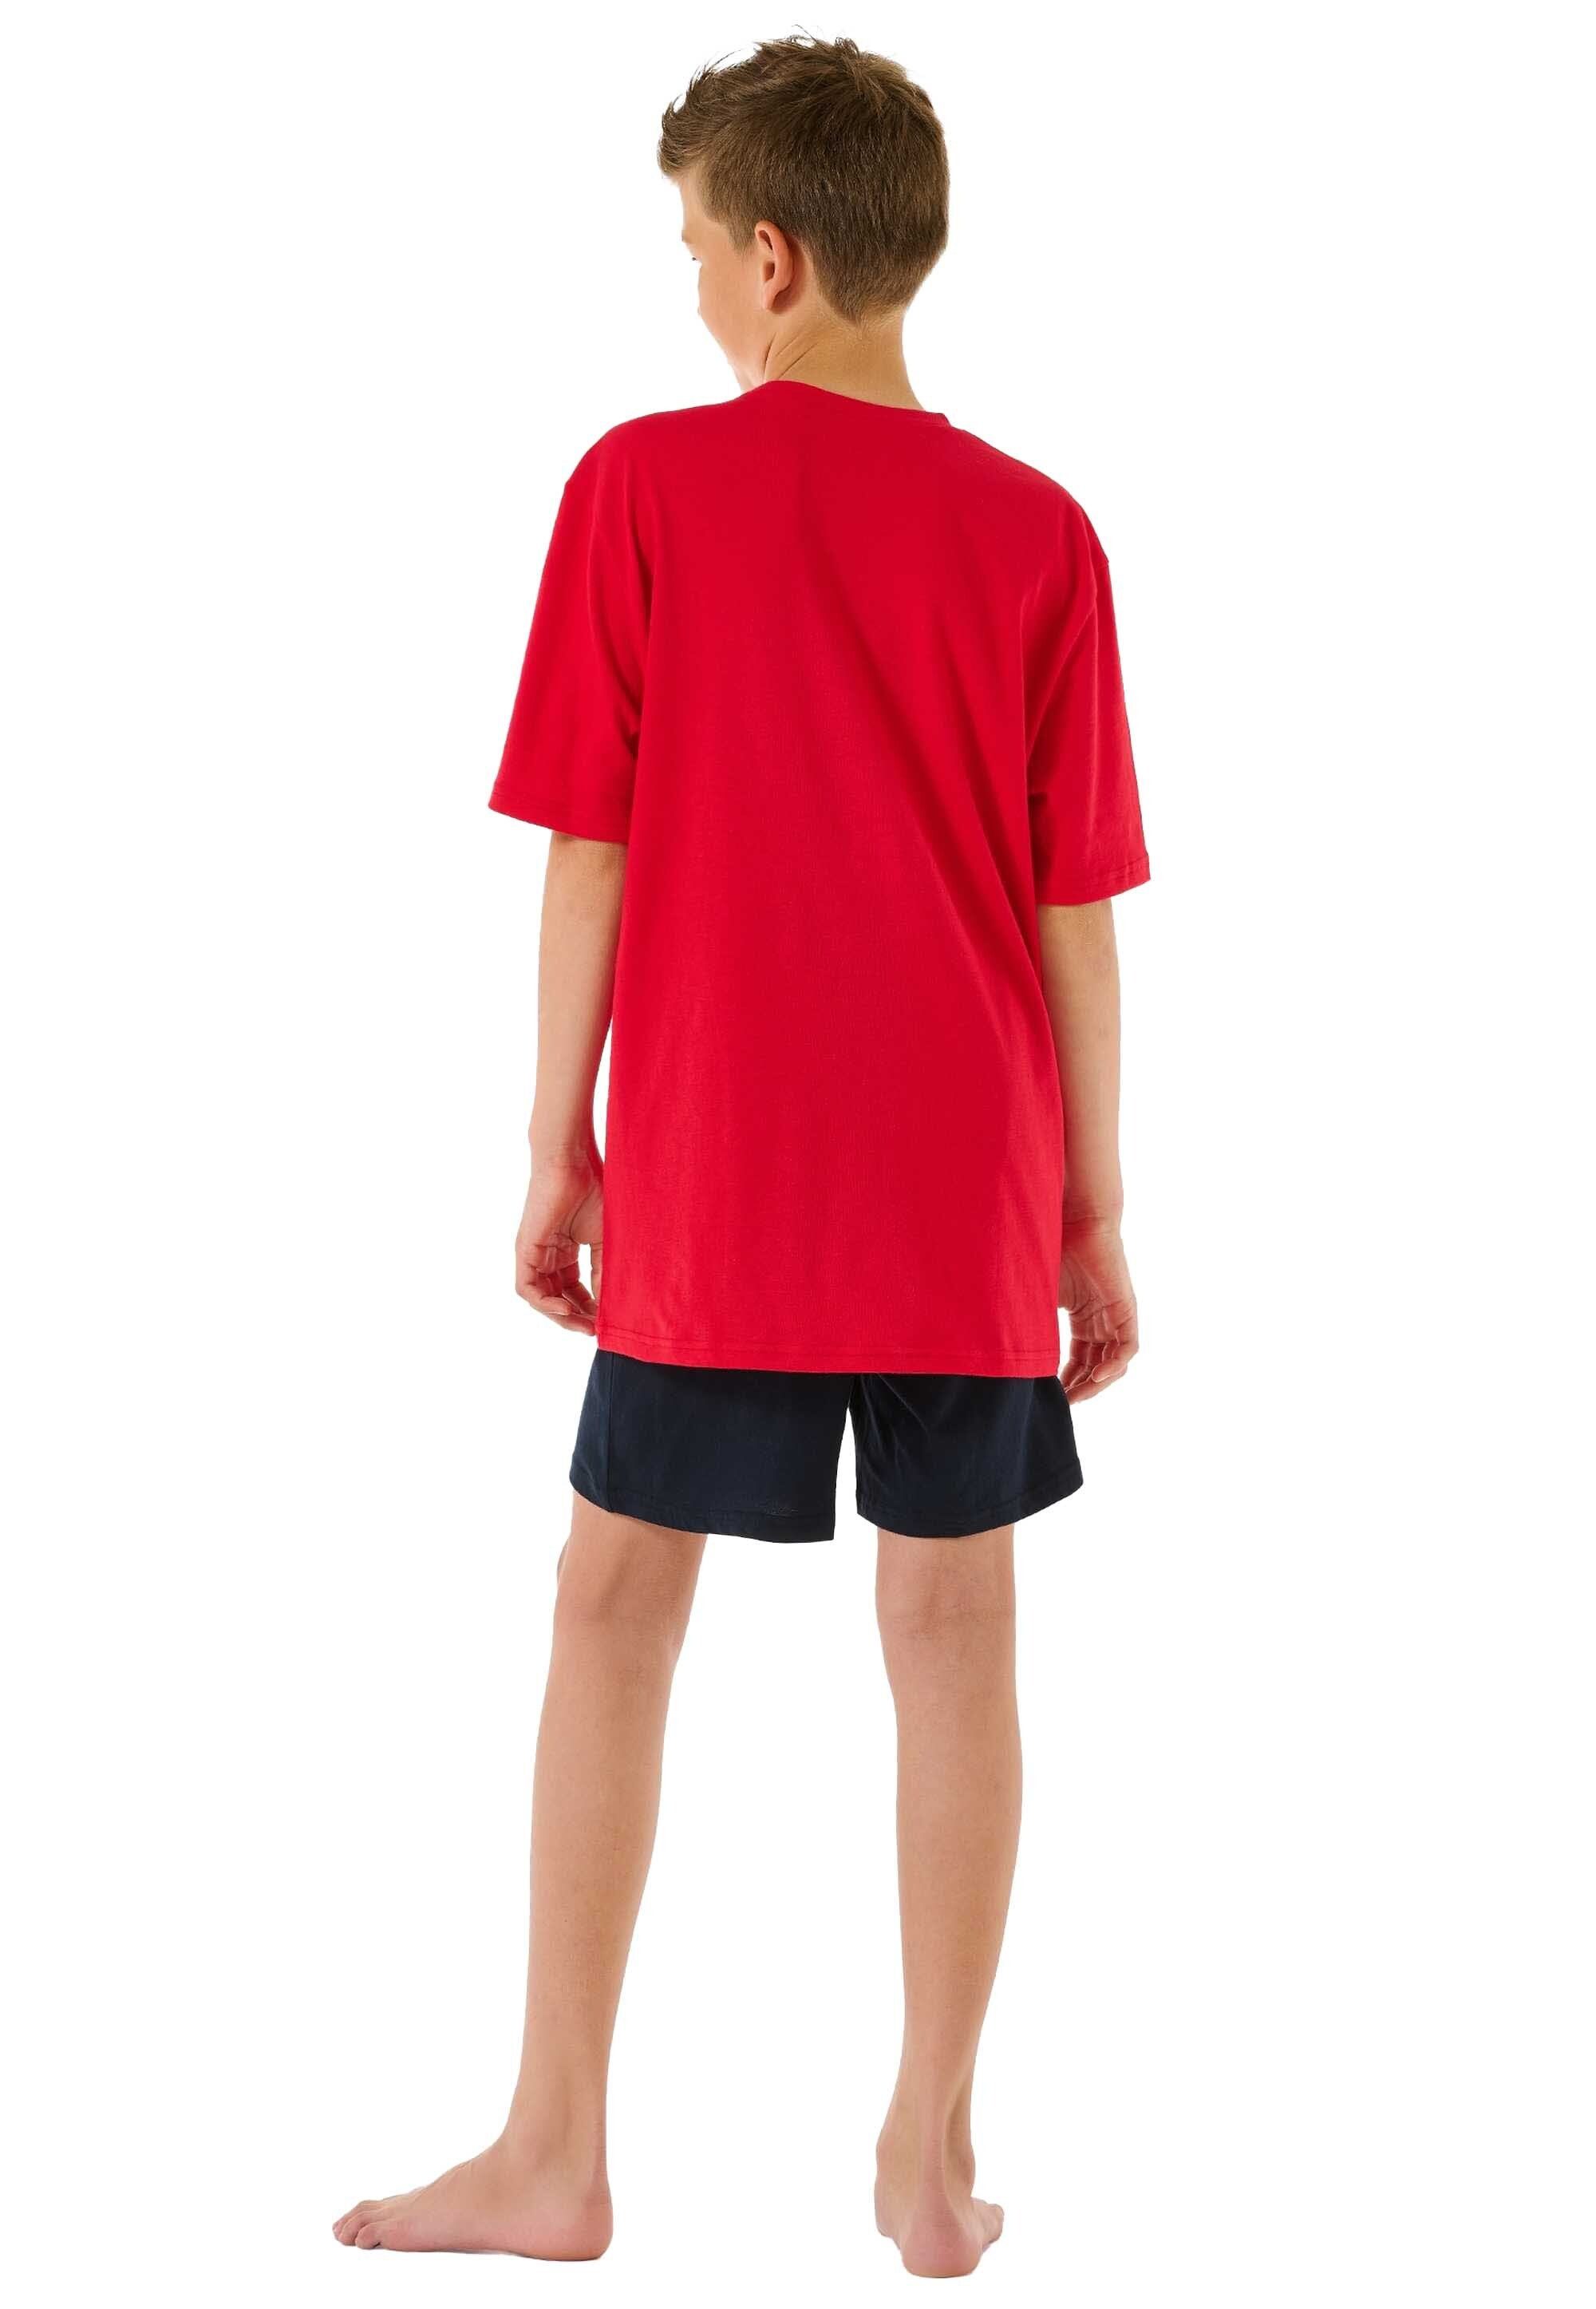 Kinder kurz, Jungen Pyjama Rot/Dunkelblau - 2-tlg. Schiesser Set Schlafanzug